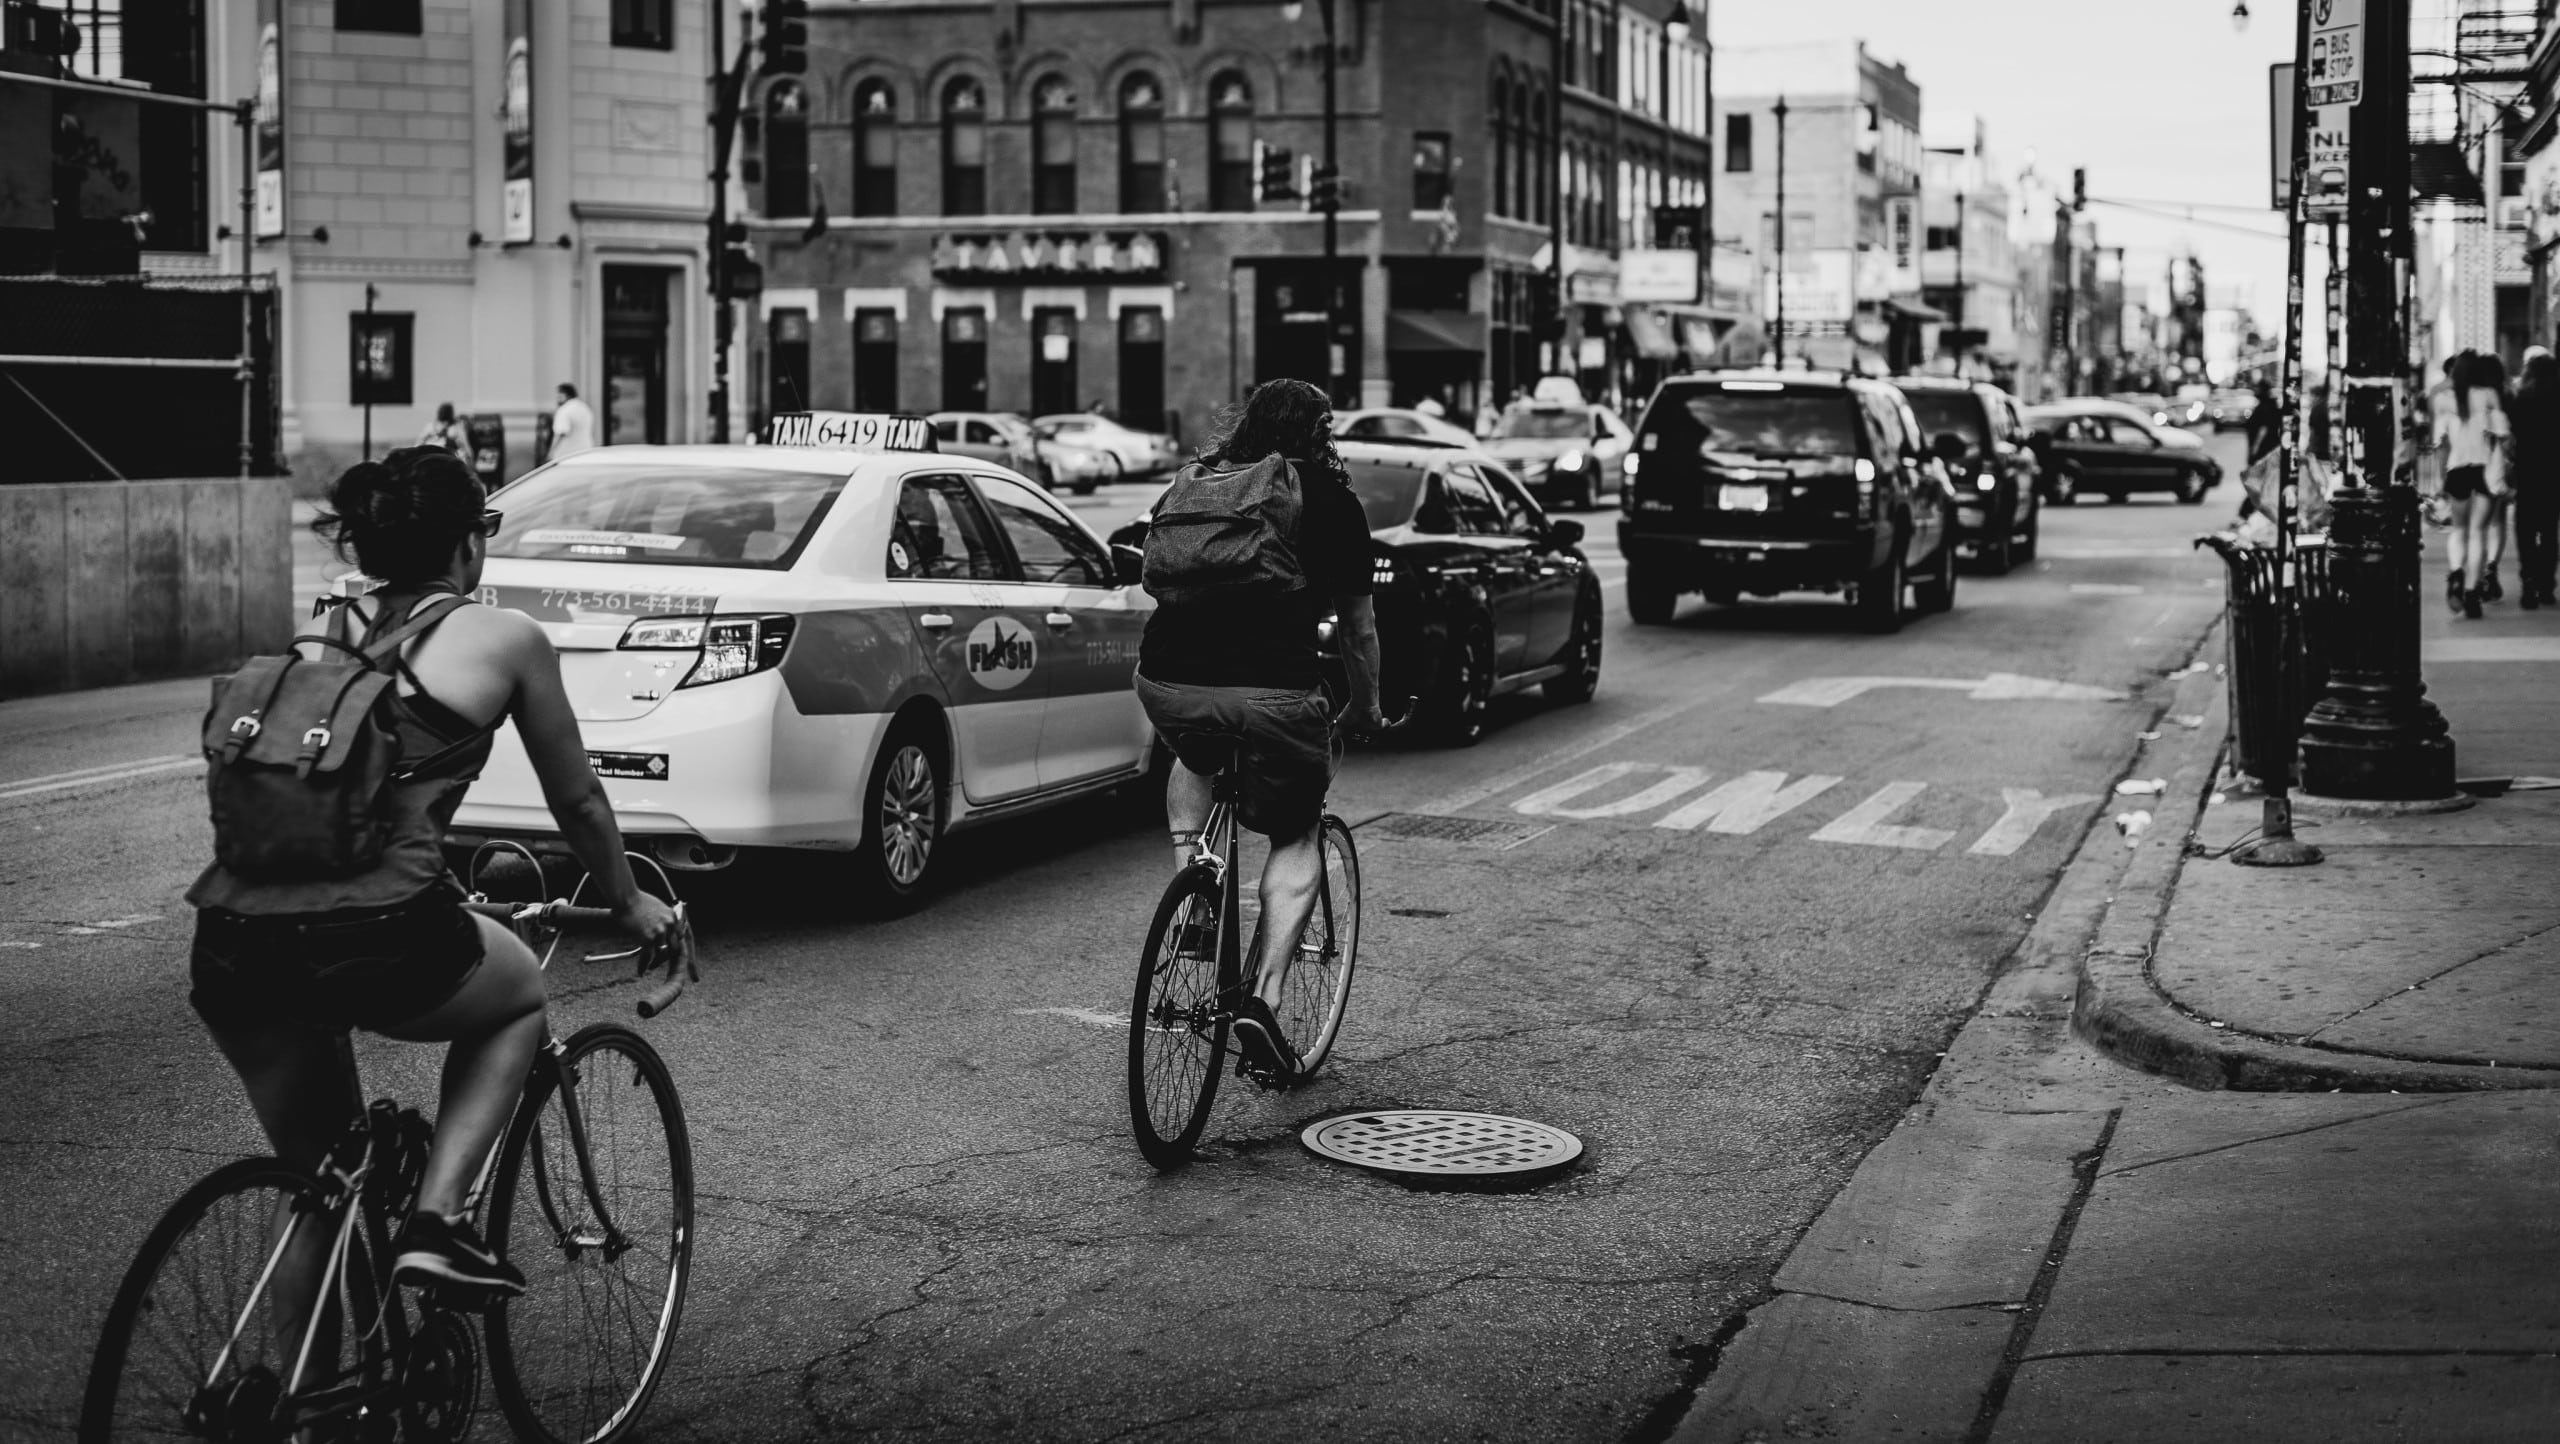 Im Vordergrund zwei Radfahrer, im Hintergrund Autos. In einer städtischen Szenerie.